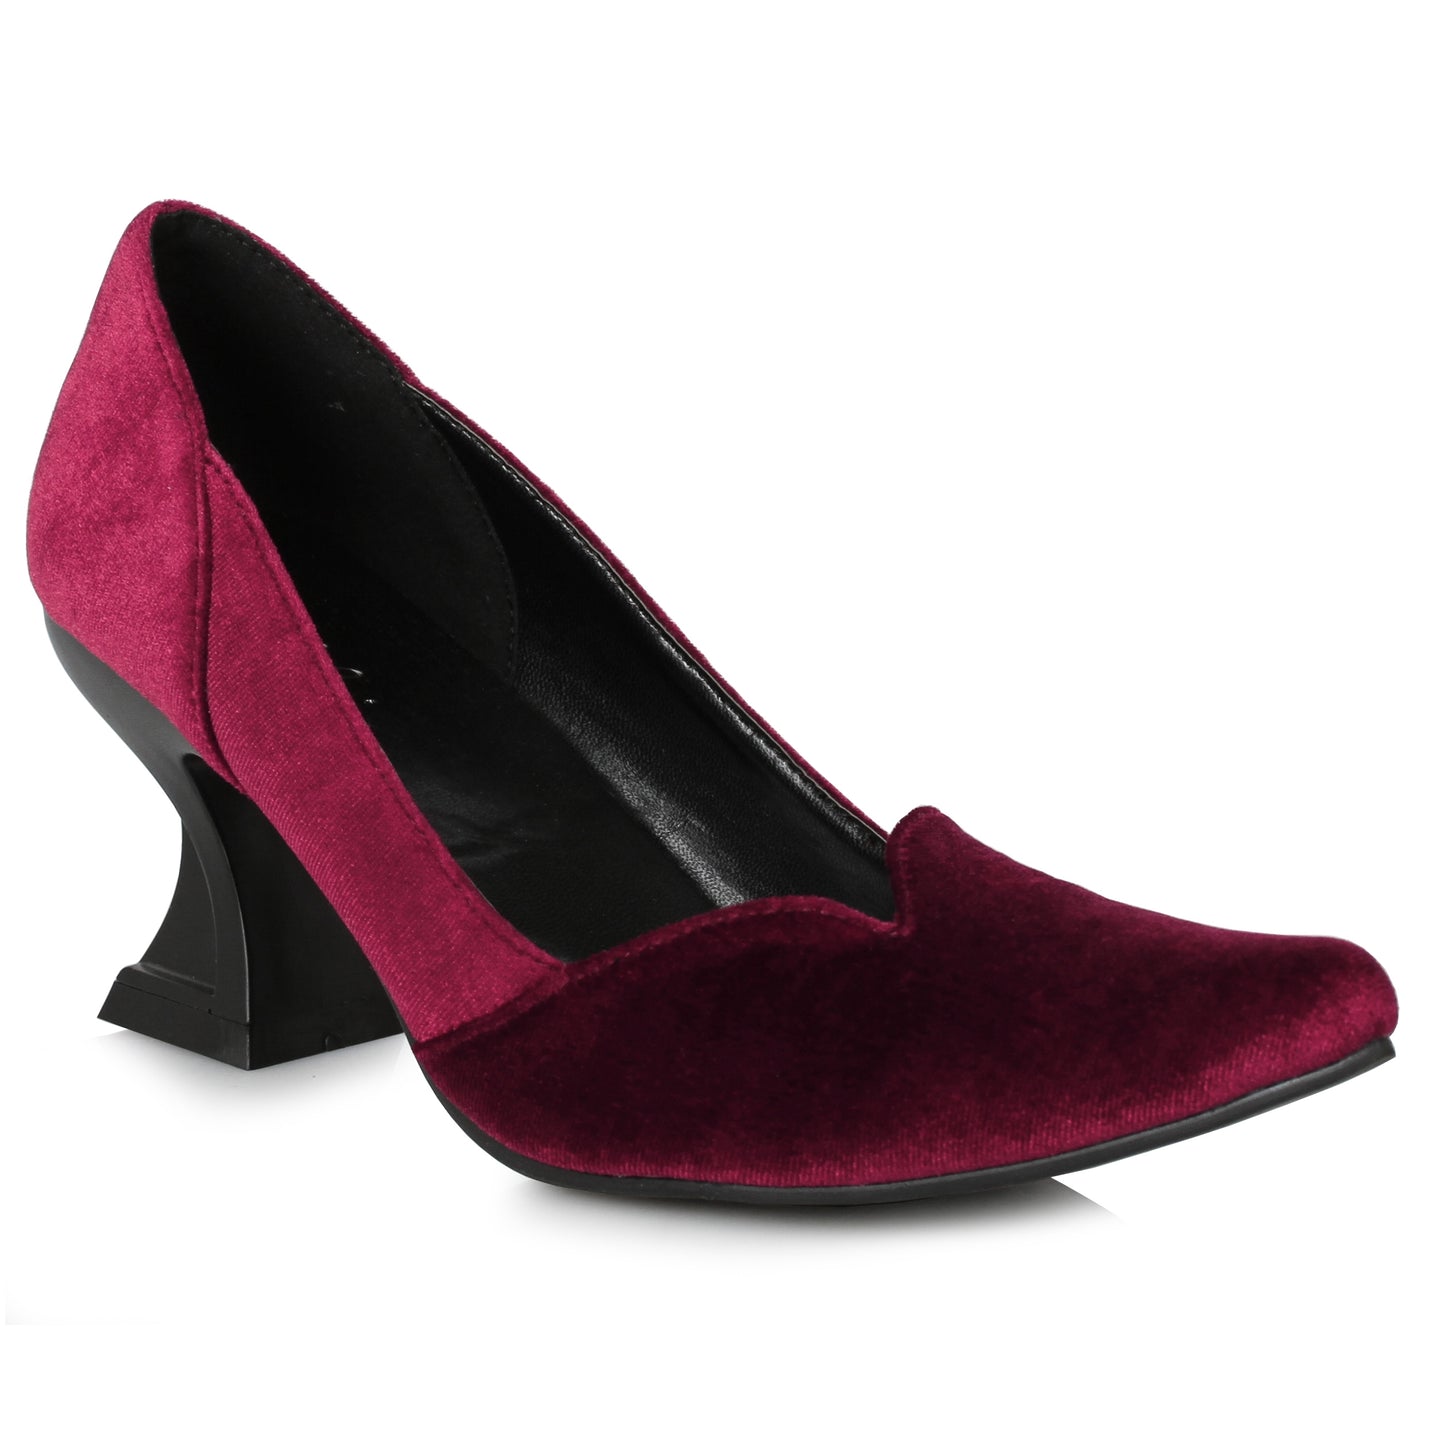 301-VIVIAN Ellie Shoes 3" Heel Witch Shoe. 3 INCH HEEL